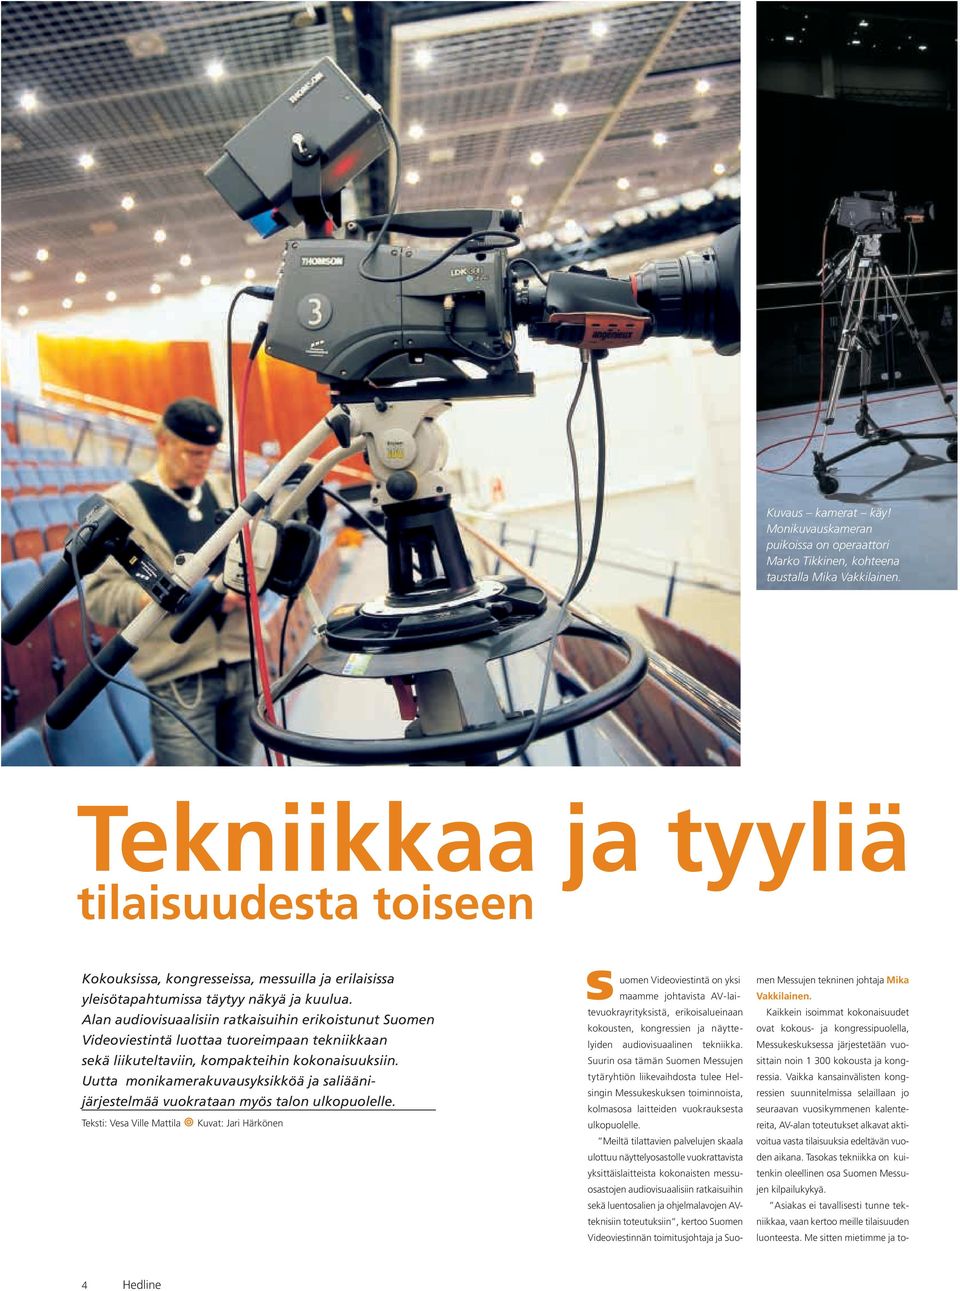 Alan audiovisuaalisiin ratkaisuihin erikoistunut Suomen Videoviestintä luottaa tuoreimpaan tekniikkaan sekä liikuteltaviin, kompakteihin kokonaisuuksiin.